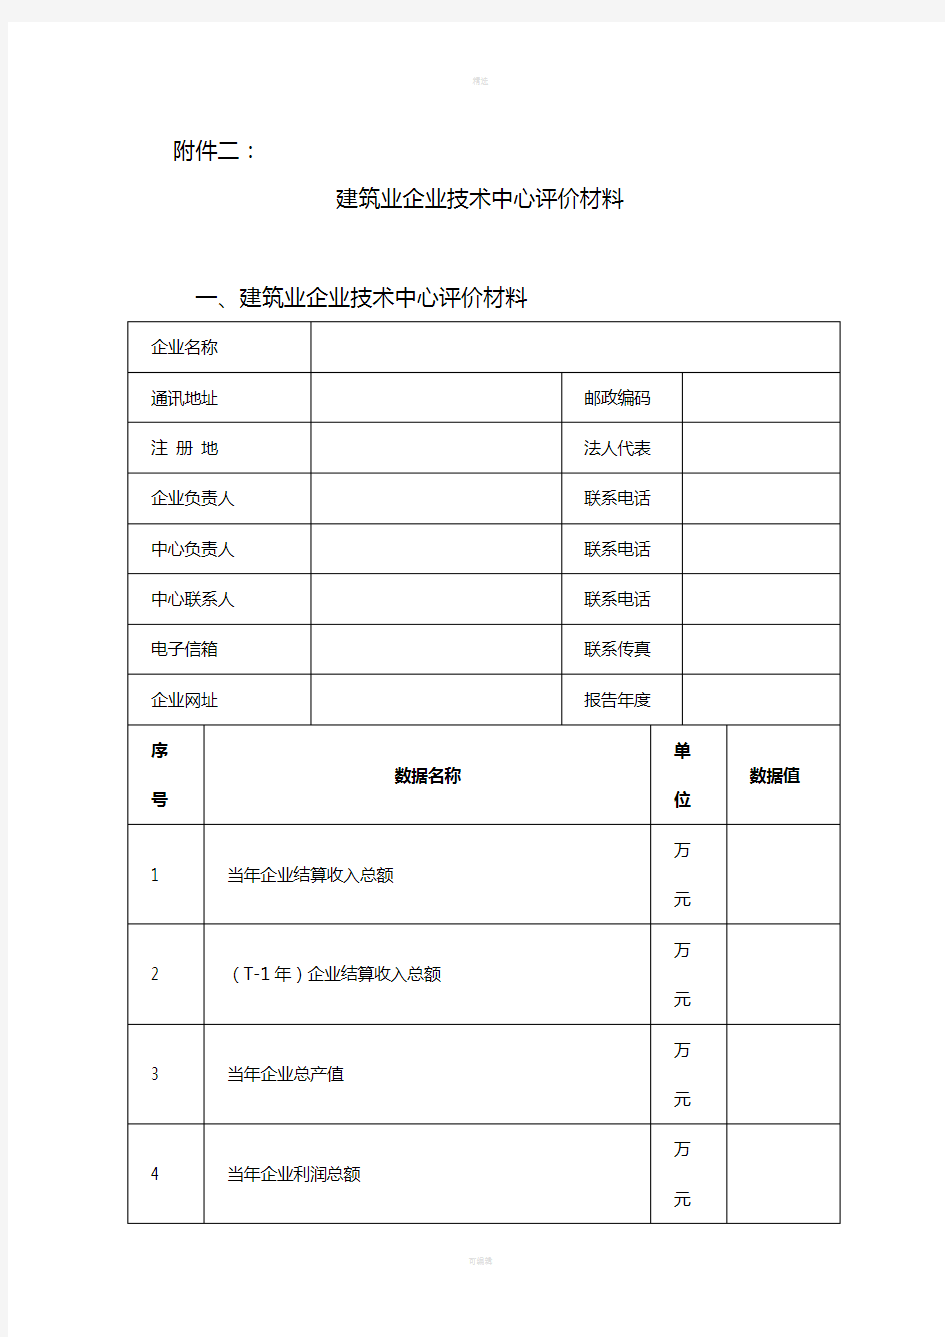 江苏省建筑业企业技术中心评价材料